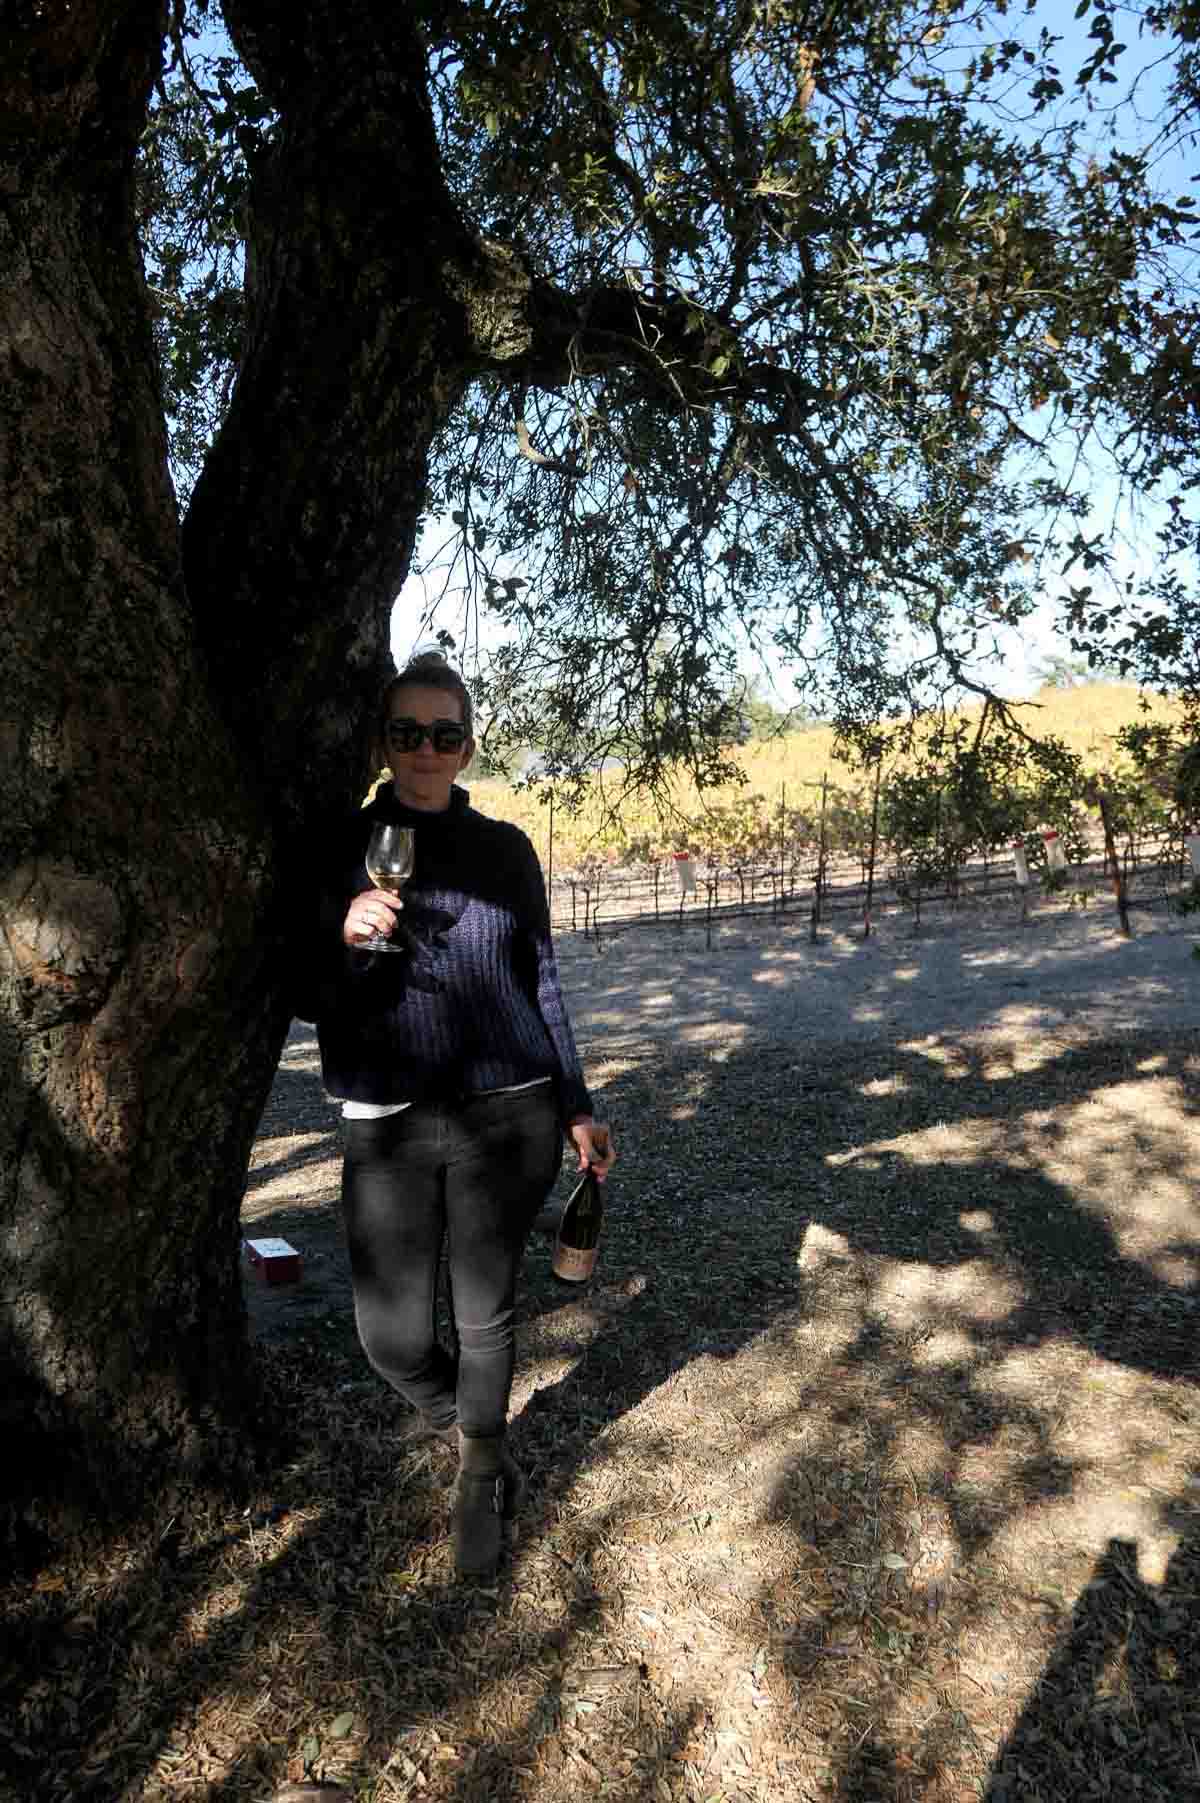 Best Winery near Santa Rosa